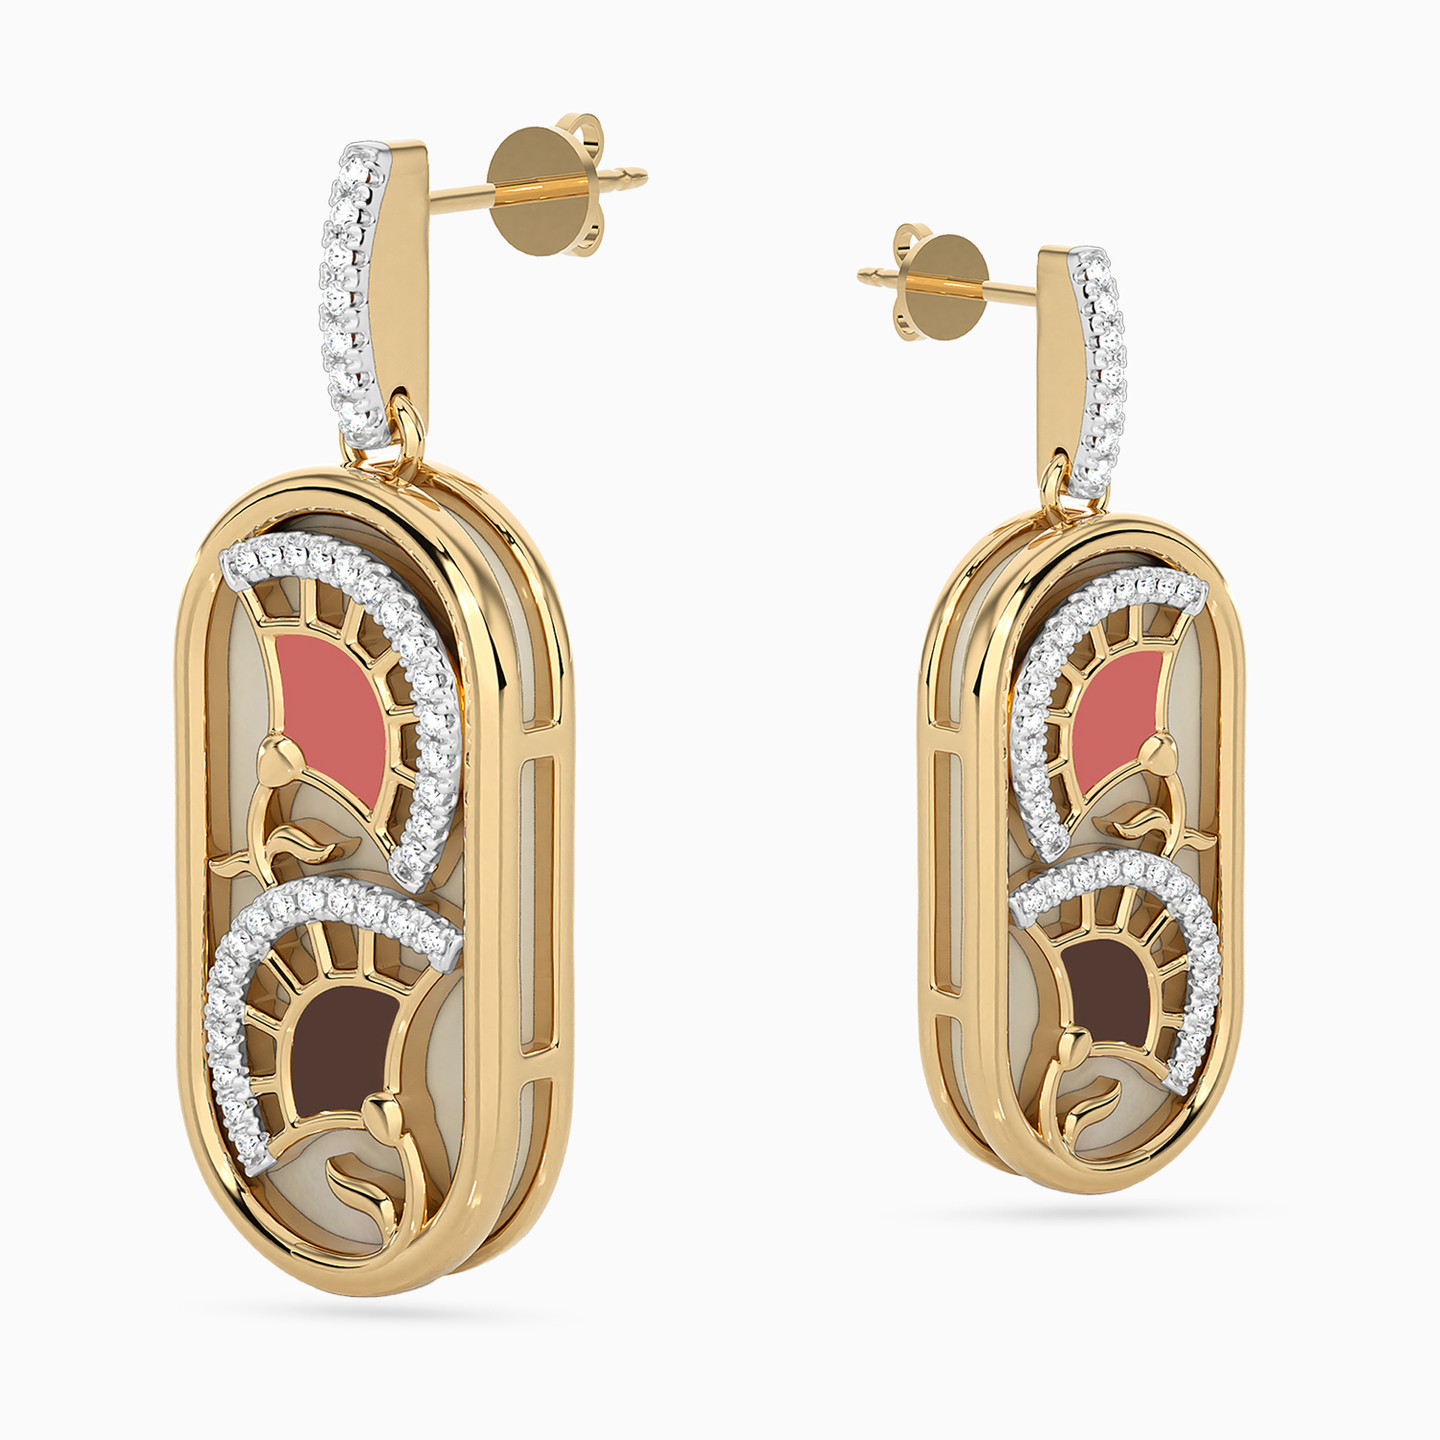 Oval Shaped Diamond & Enamel Coated Drop Earrings in 18K Gold - 3